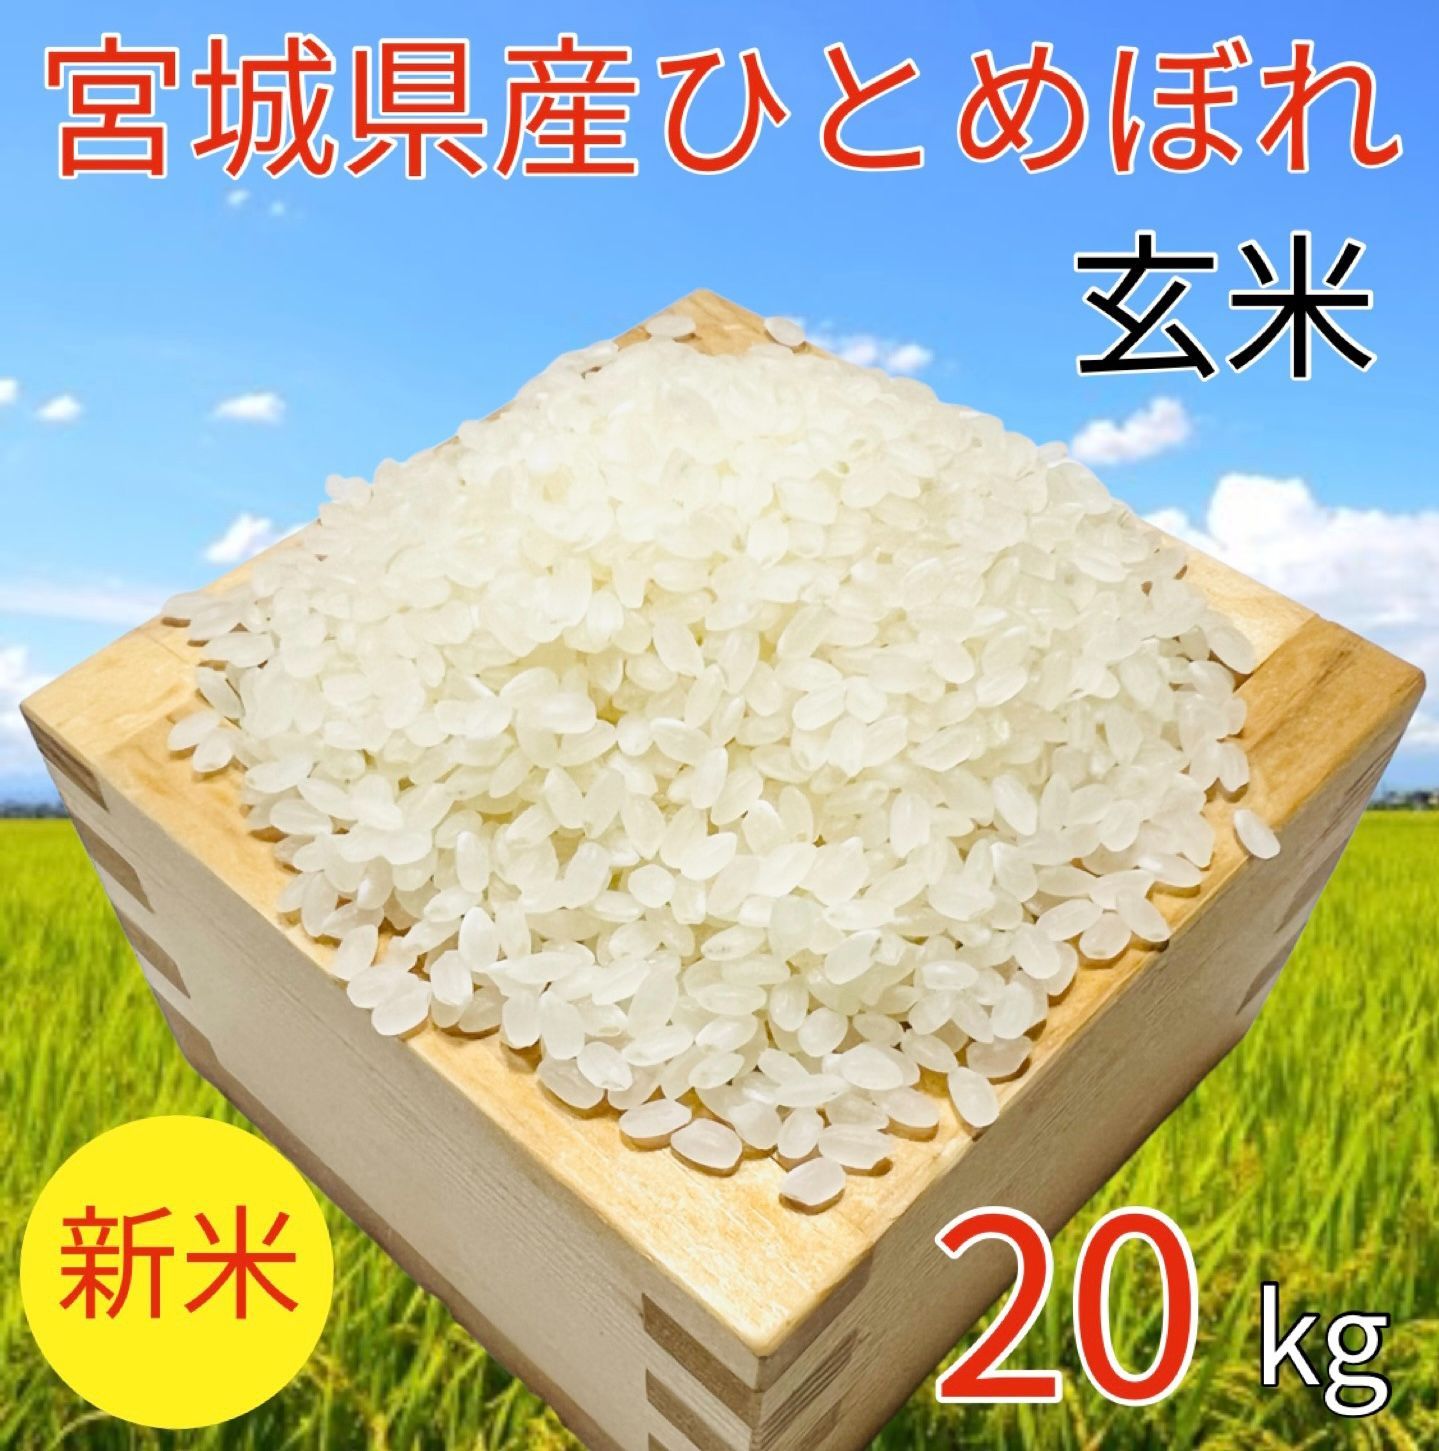 食品令和元年度産 宮城ひとめぼれ 20キロ - 米/穀物